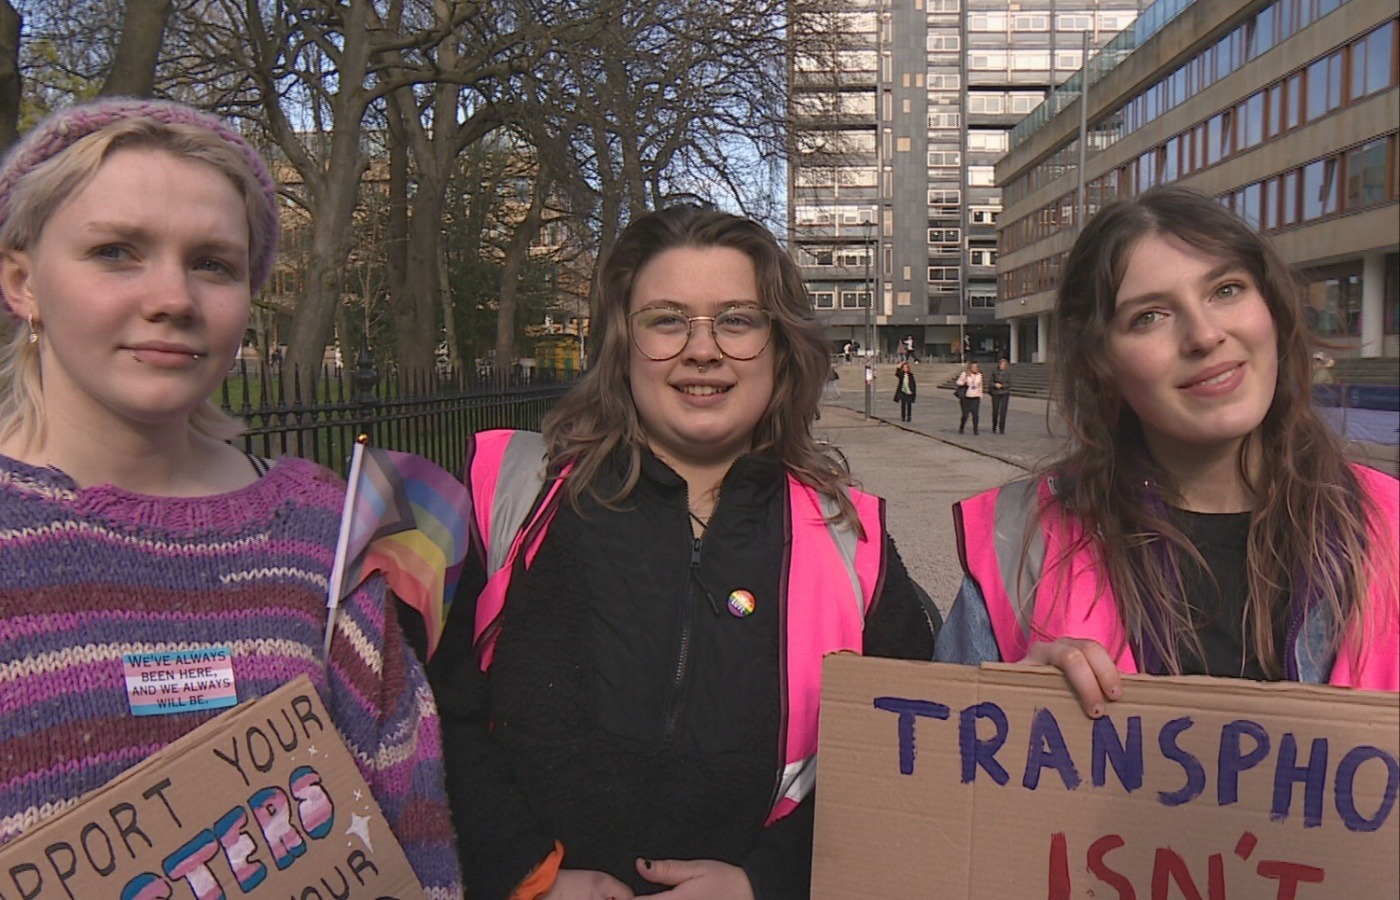 Members of Gender Liberation at the University of Edinburgh